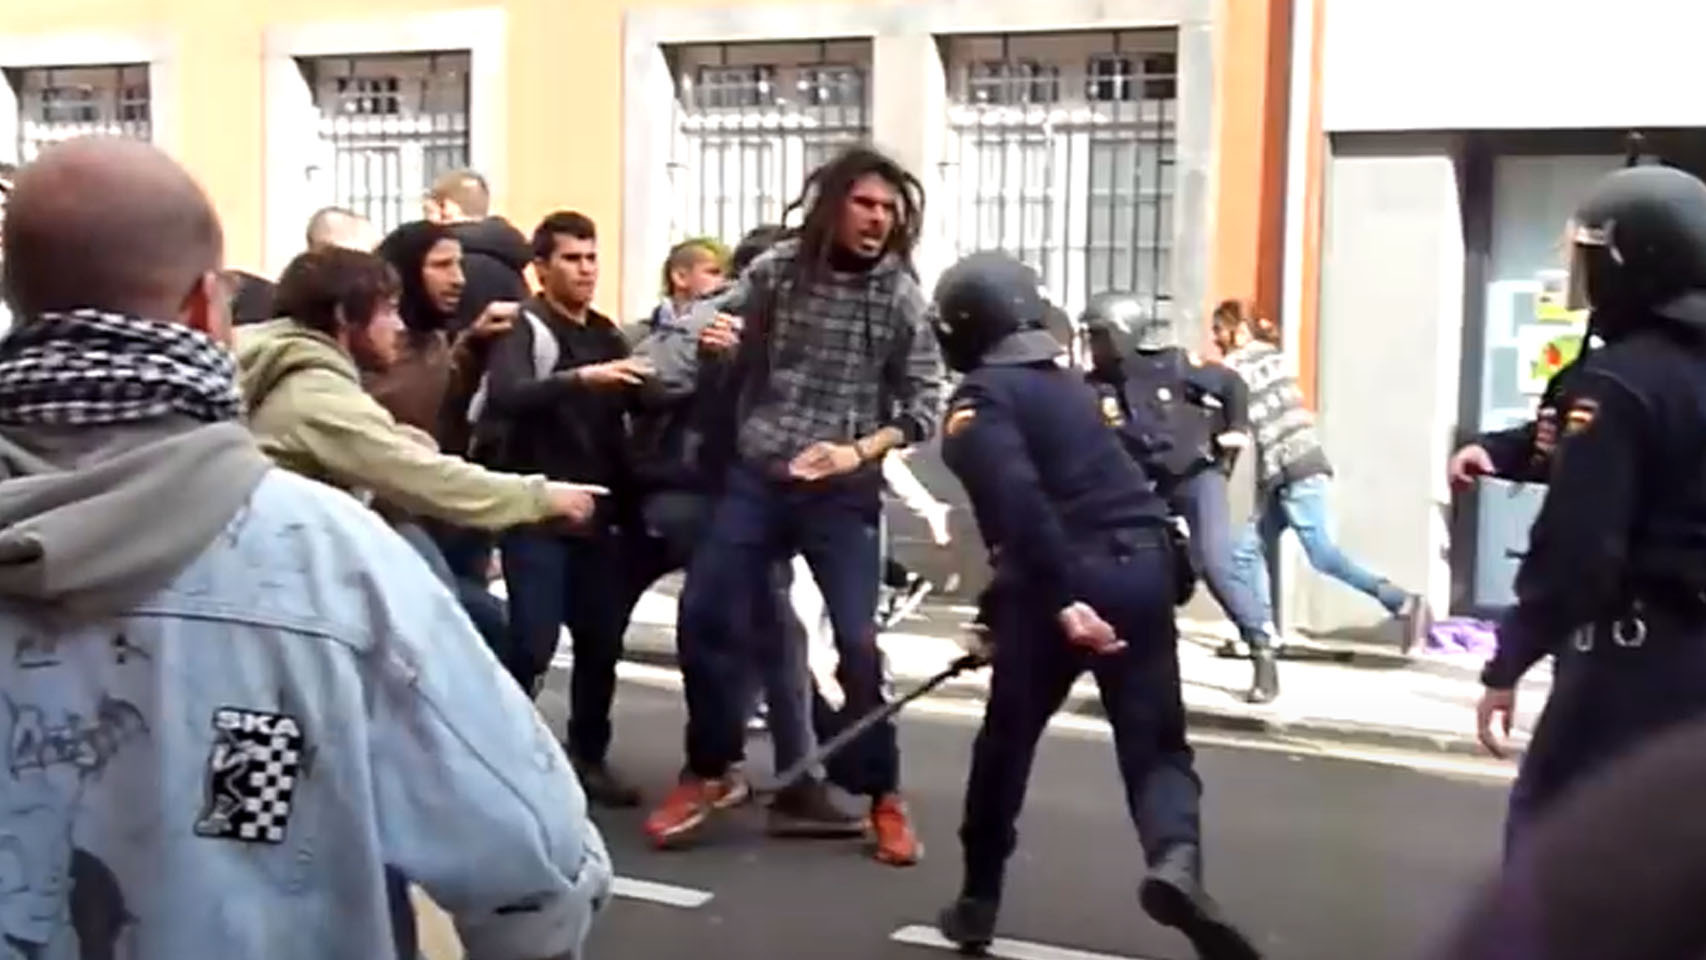 El diputado de Podemos Alberto Rodríguez se enfrenta a la Policía, durante los altercados registrados el 25 de enero de 2014 en La Laguna (Tenerife).